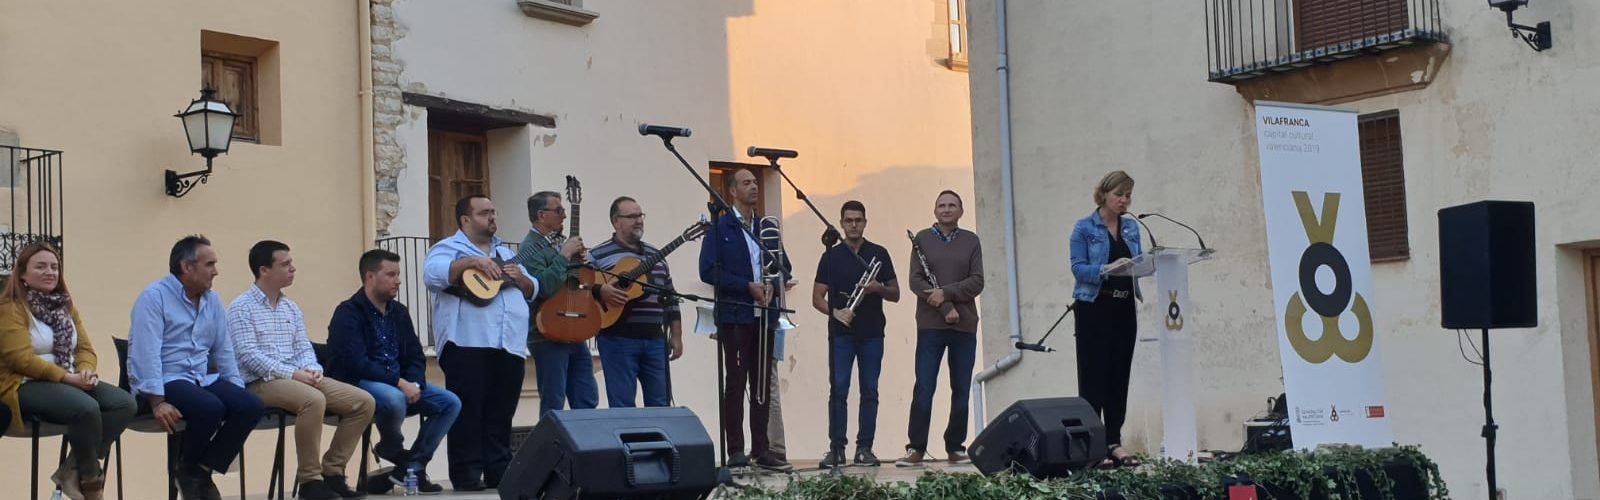 El Cant d’Estil triomfa en Vilafranca